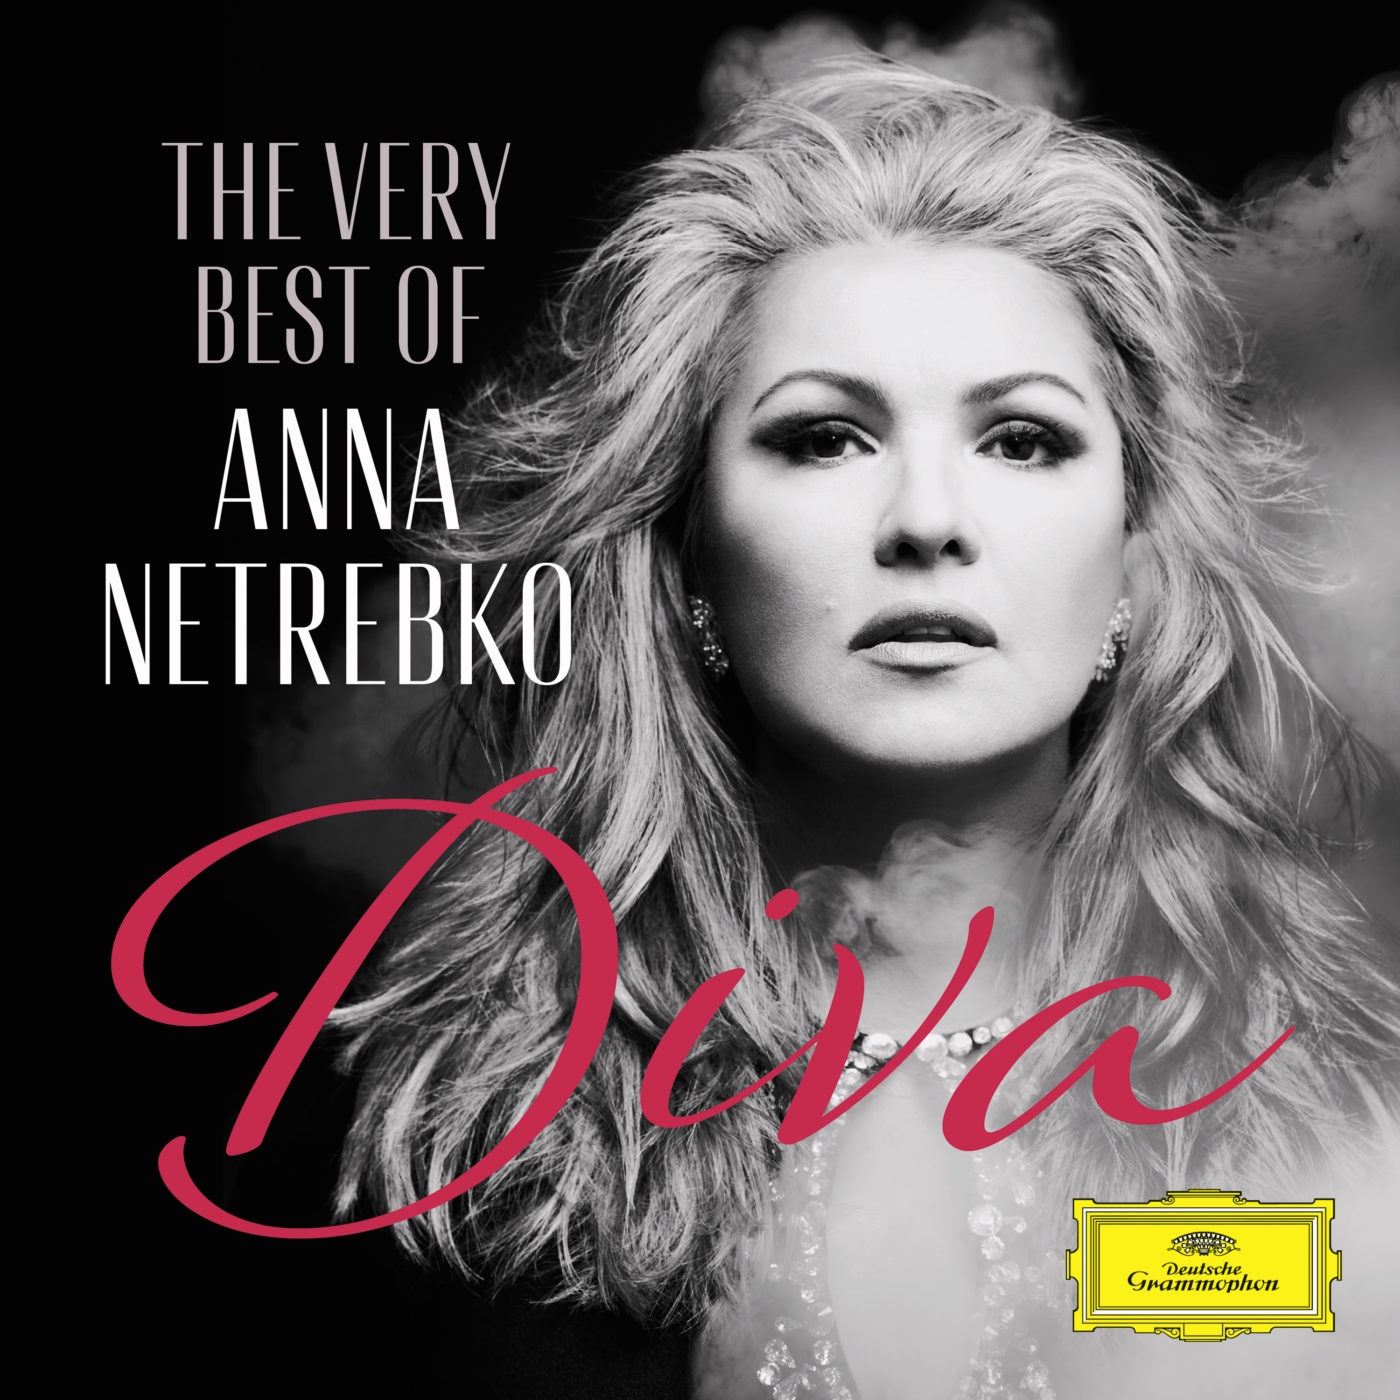 Diva - The very best of Anna Netrebko - Deutsche Grammophon